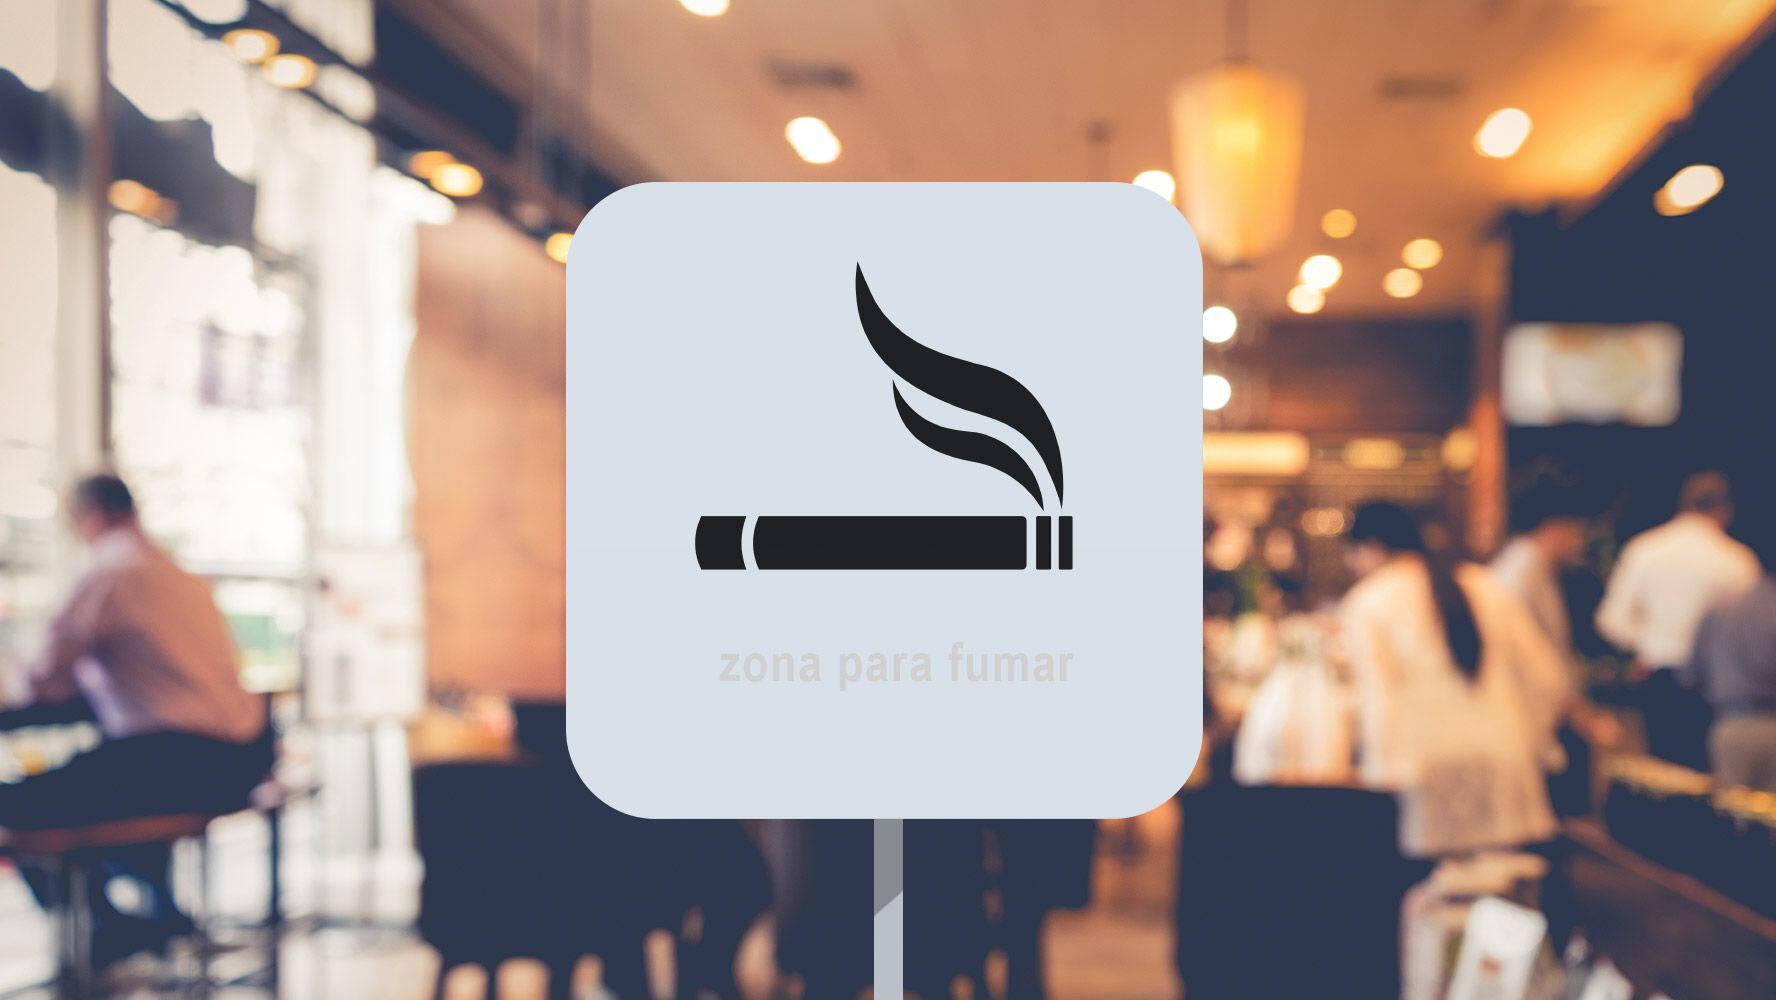 Se acabó espacio para el vicio: restaurantes no podrán ofrecer área para fumar a partir del lunes